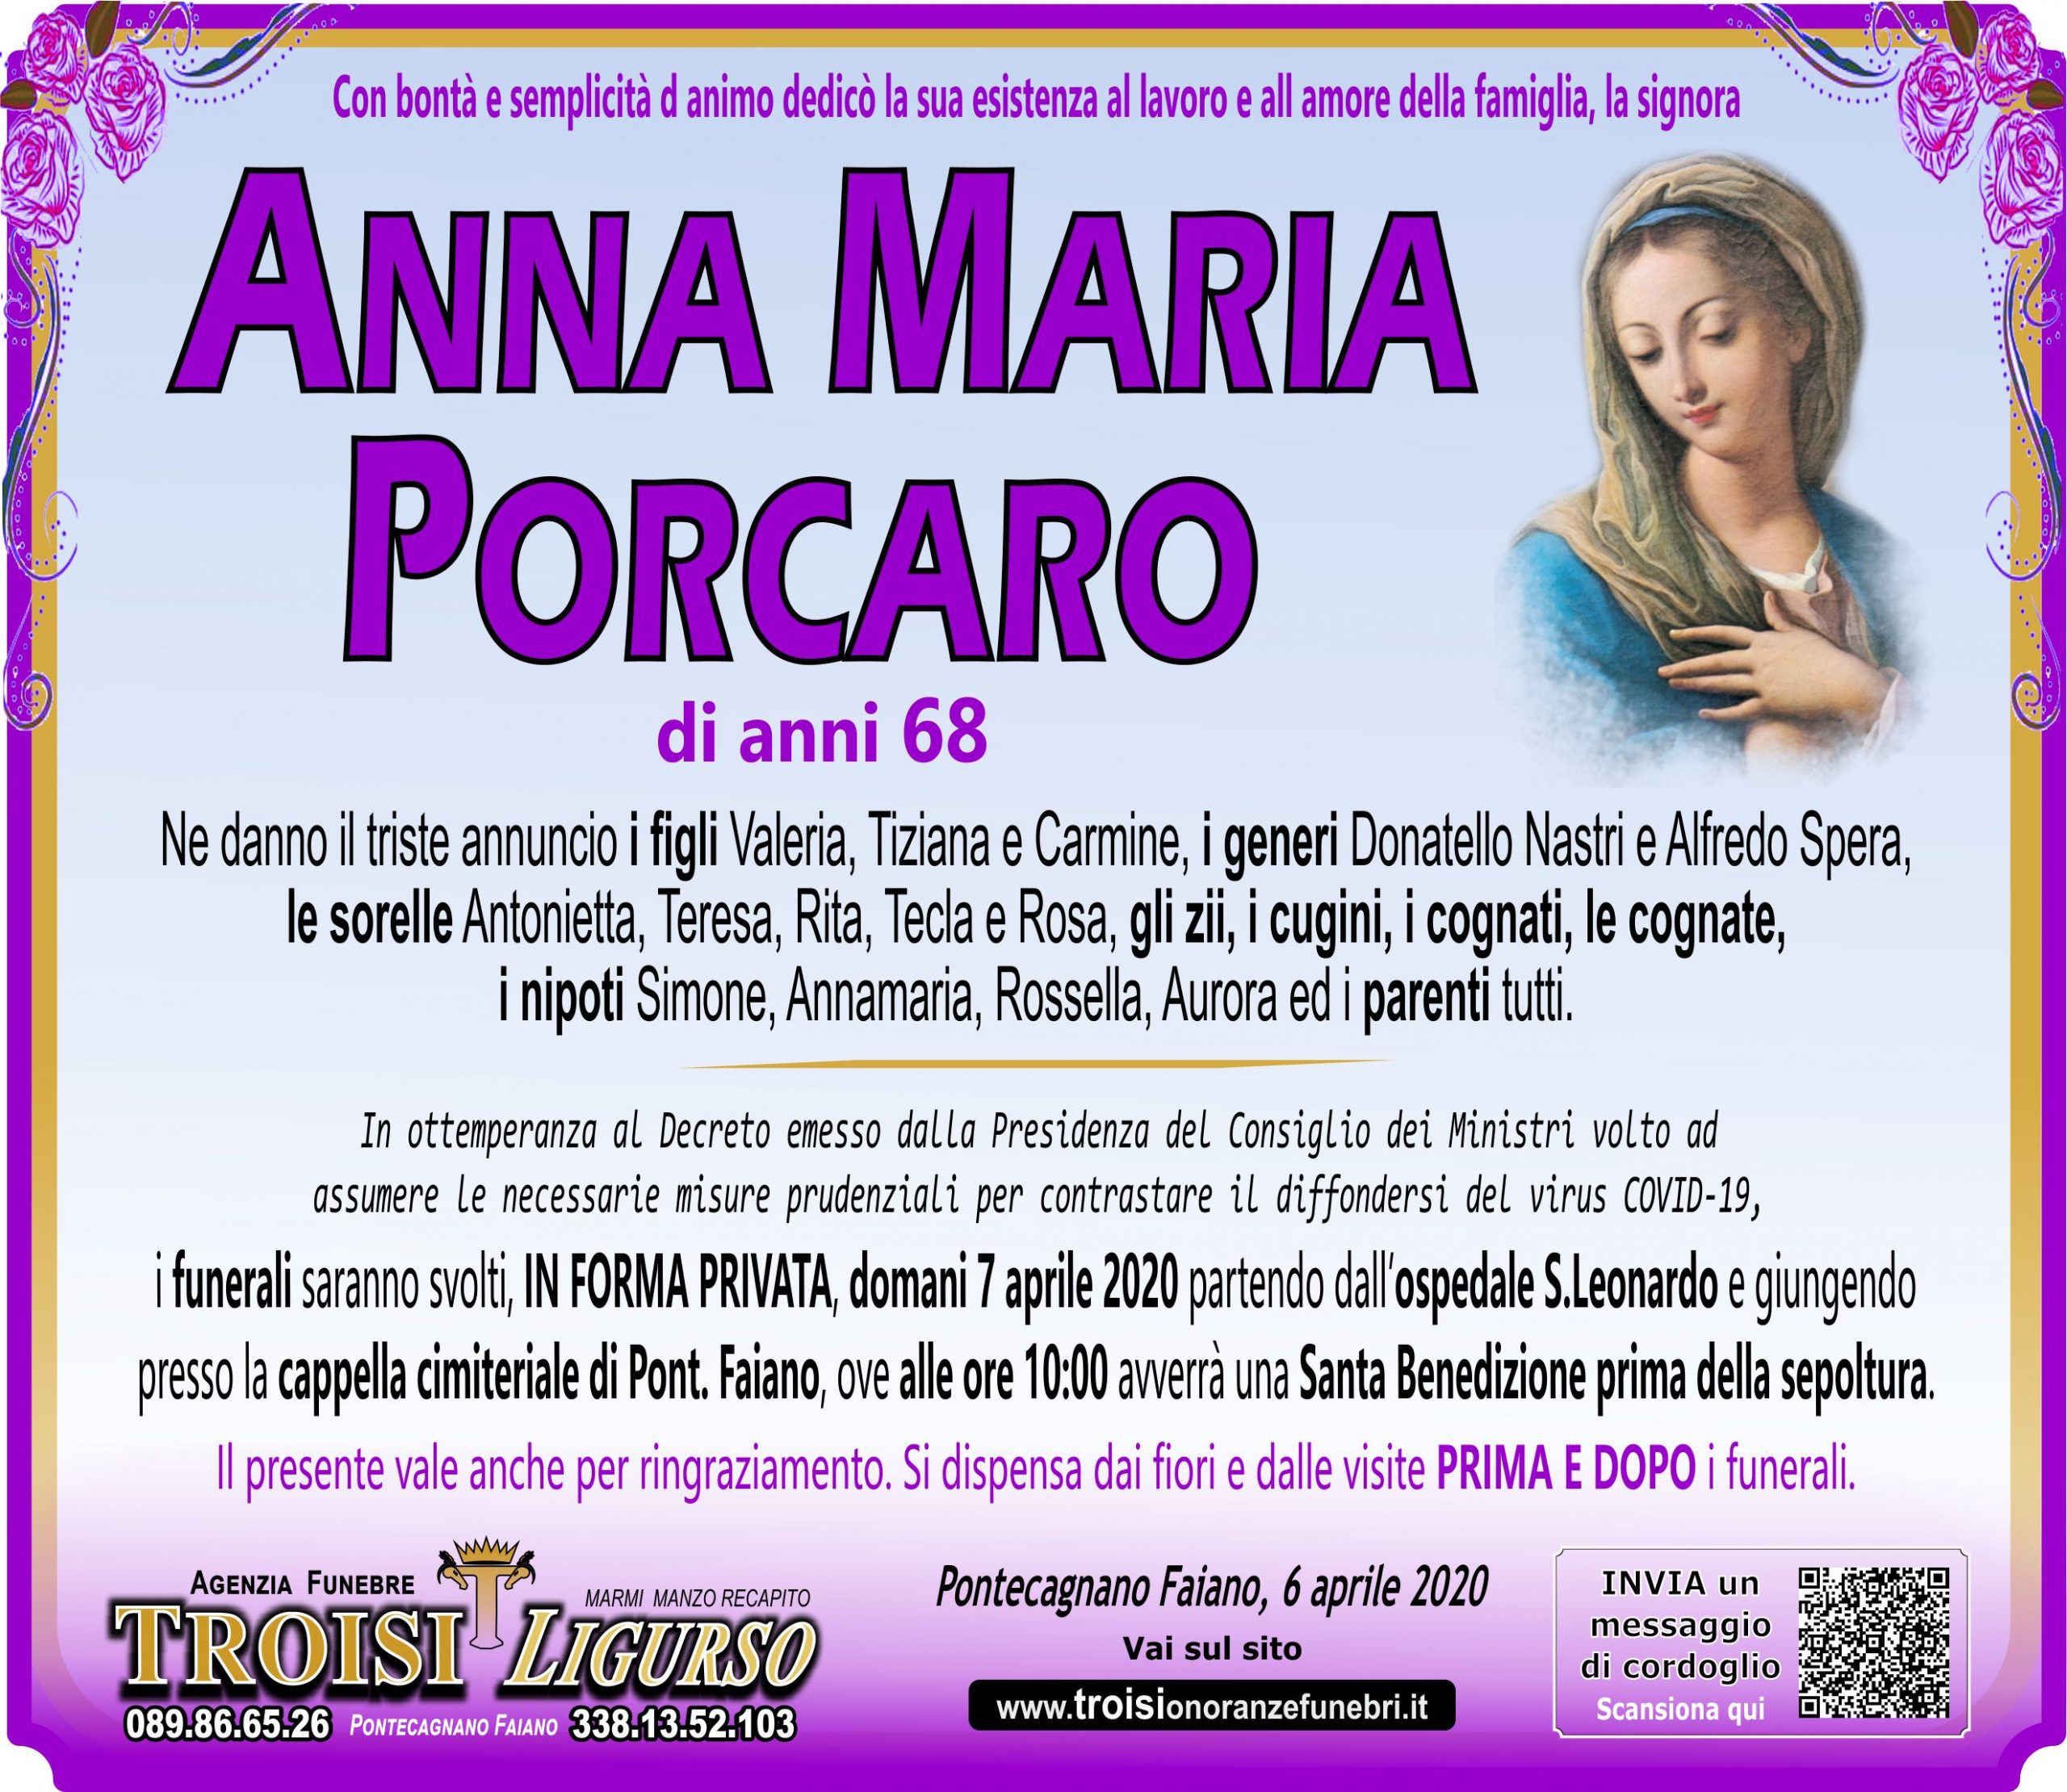 ANNA MARIA PORCARO